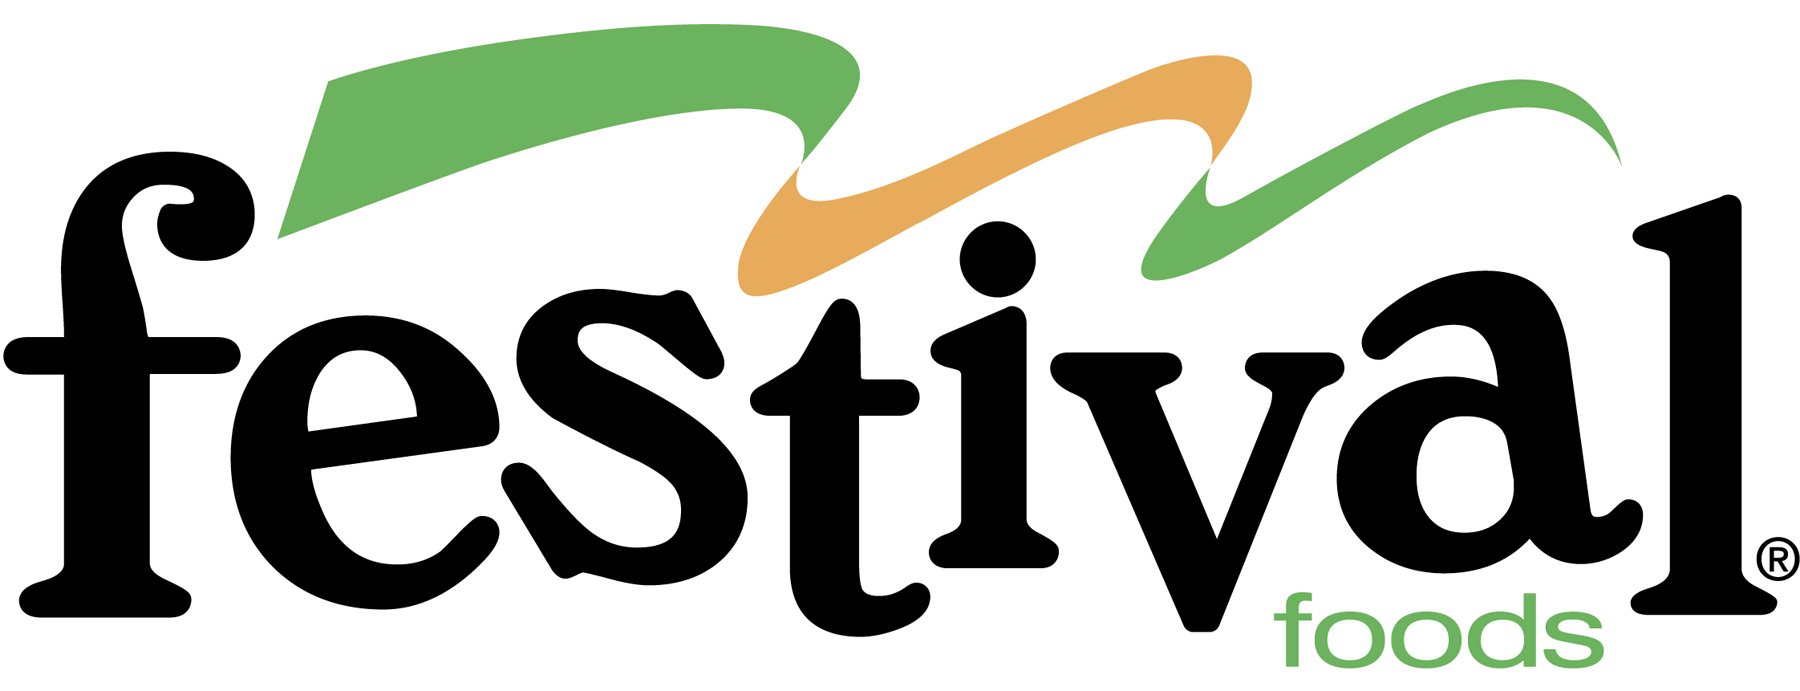 Festival Logo - high resolution jpg format.jpg